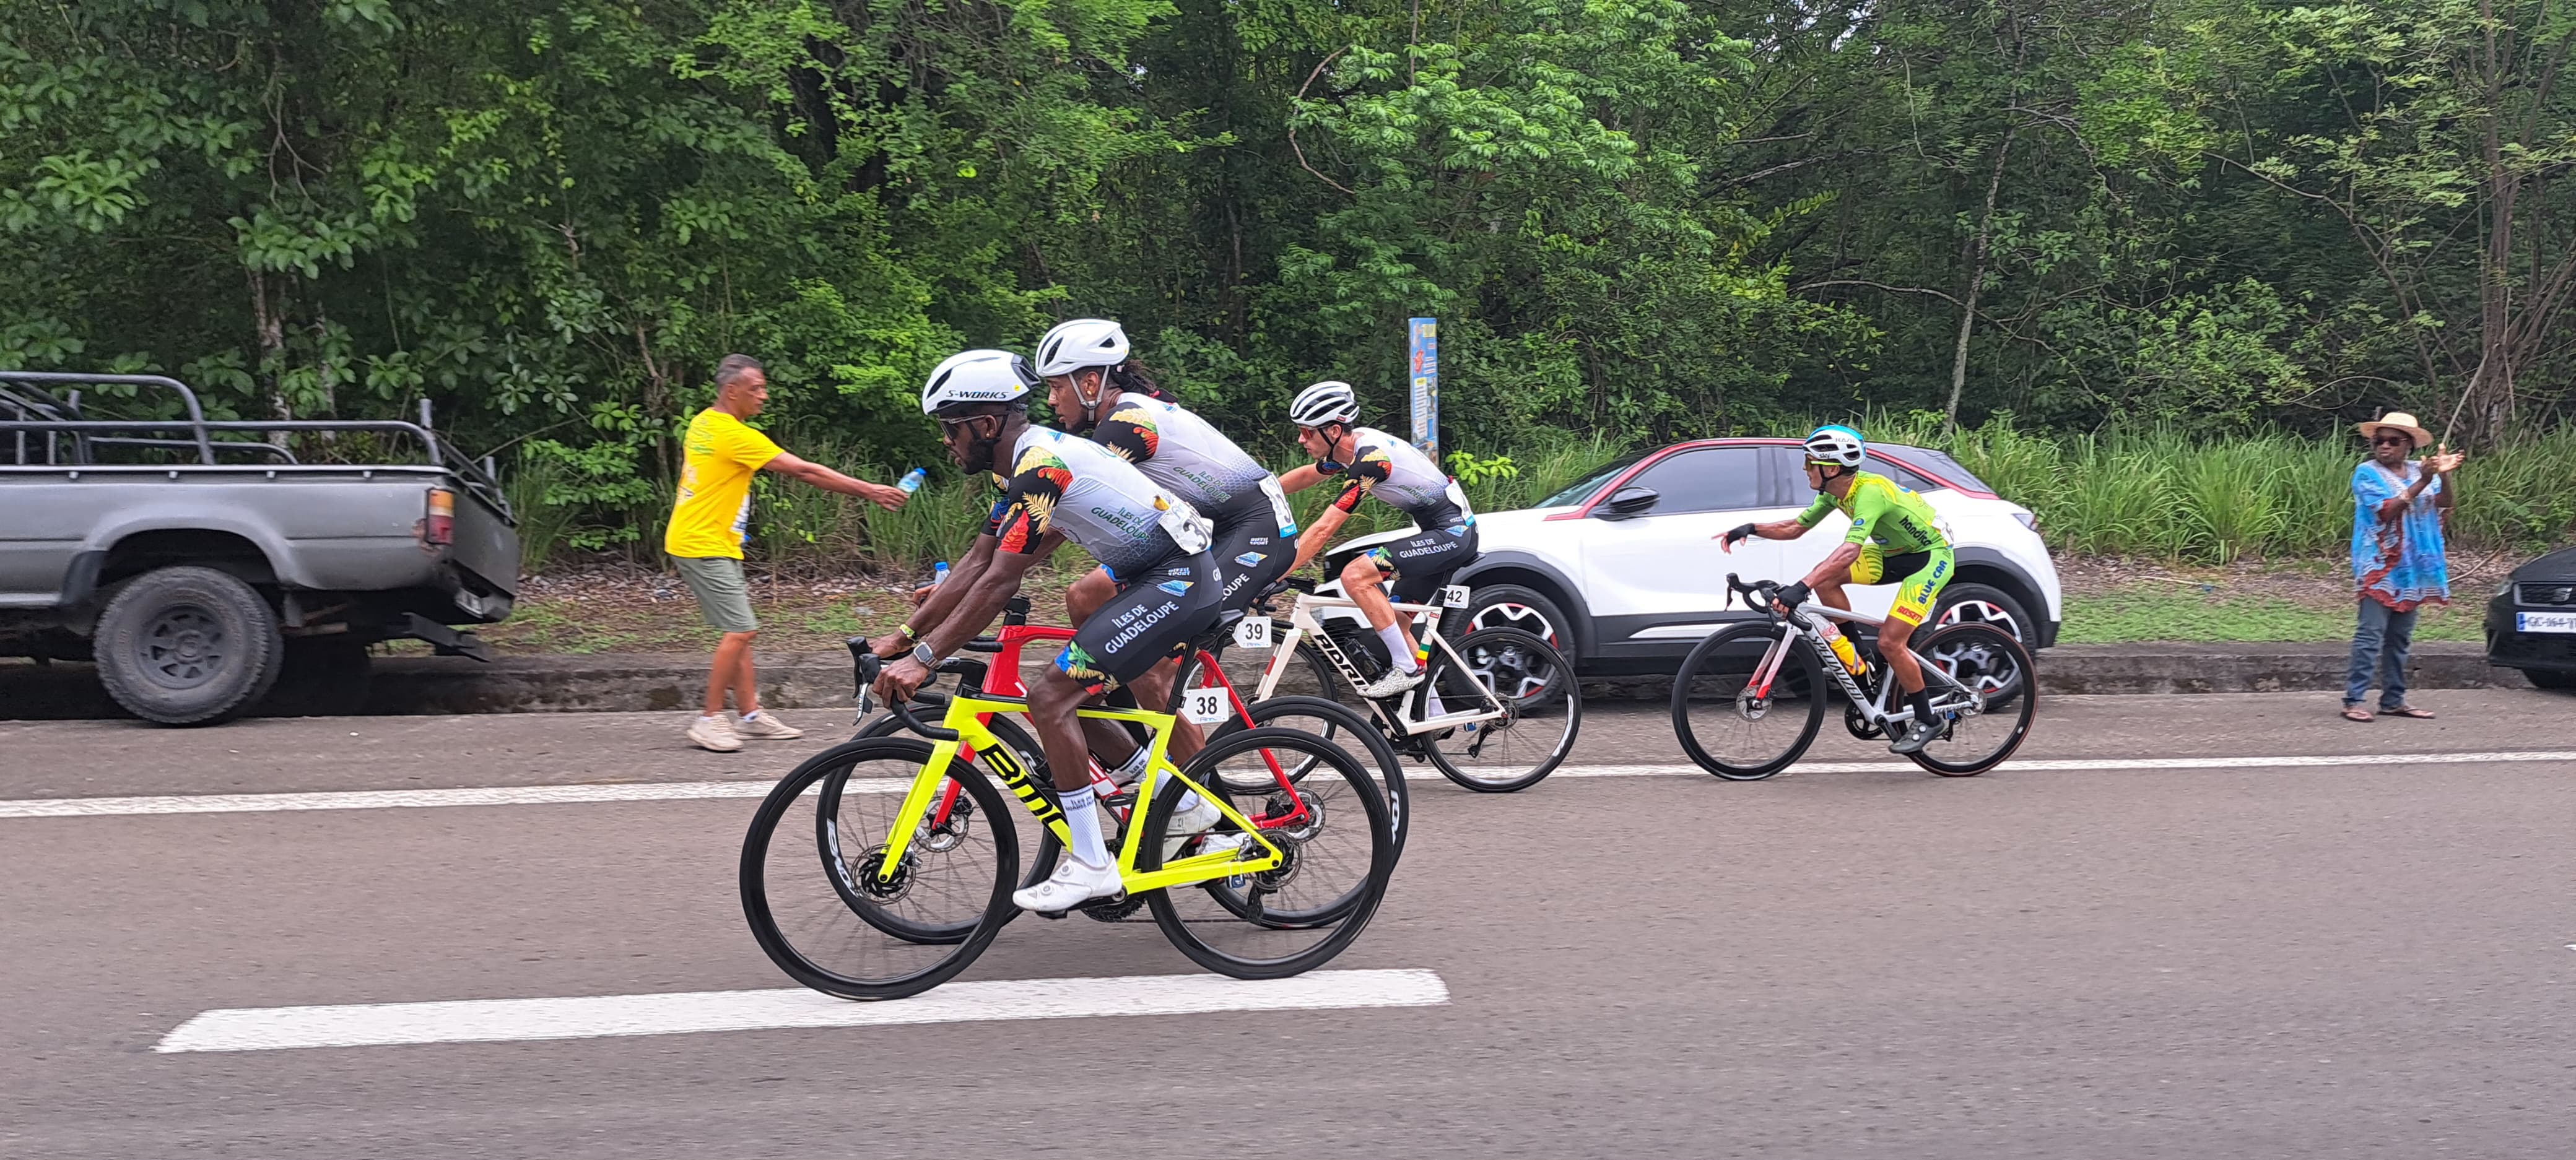     CYCLISME. Faute de victoire finale, la sélection Guadeloupe meilleure équipe du Tour de la Martinique

